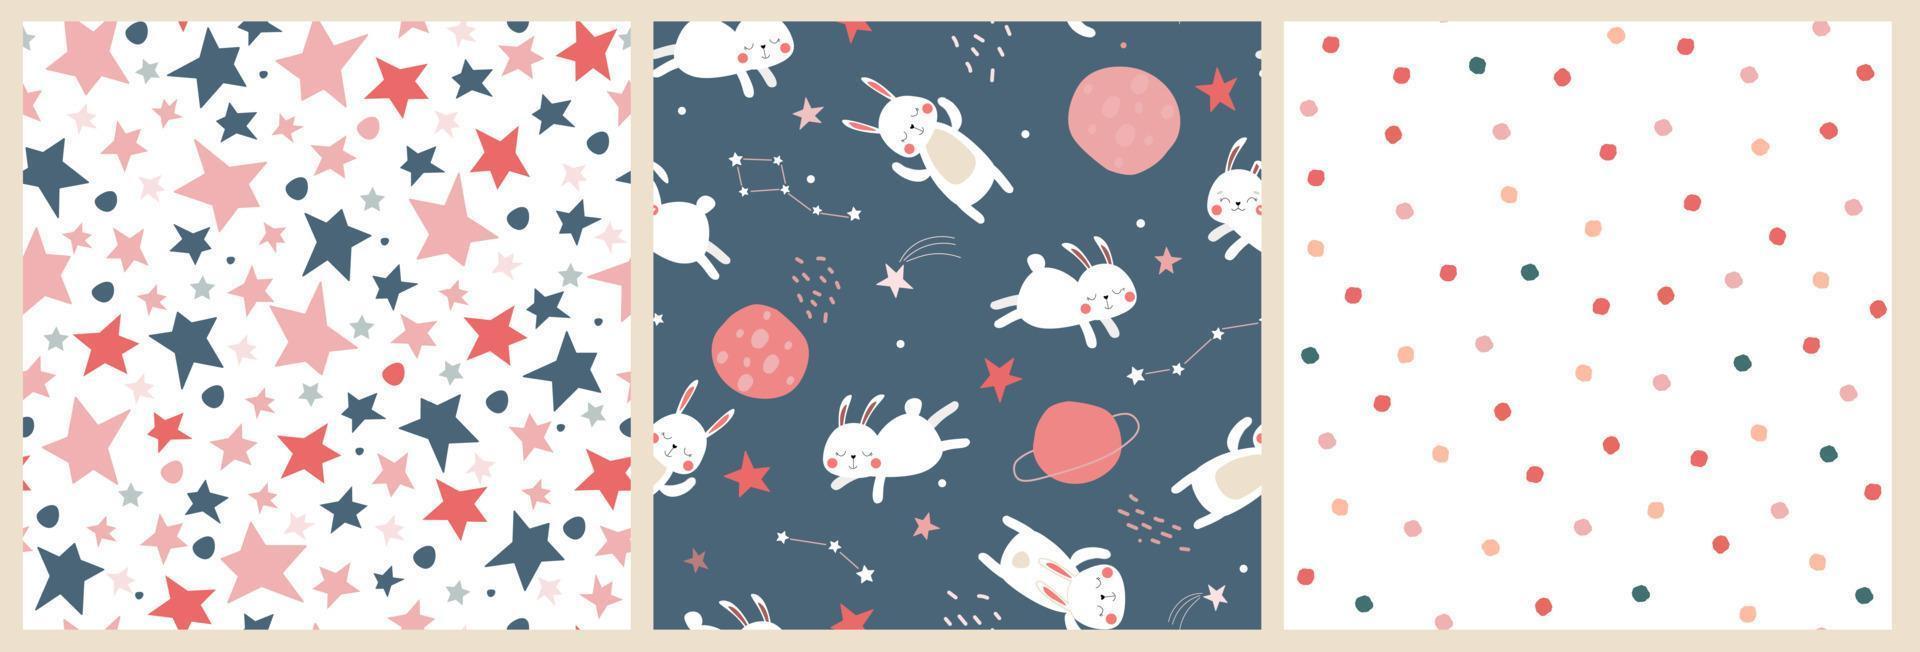 een set van naadloos patroon met een schattige babyprint met hazen in de ruimte. slapende konijnen vliegen in de lucht met sterren en planeten. vectorafbeeldingen. vector